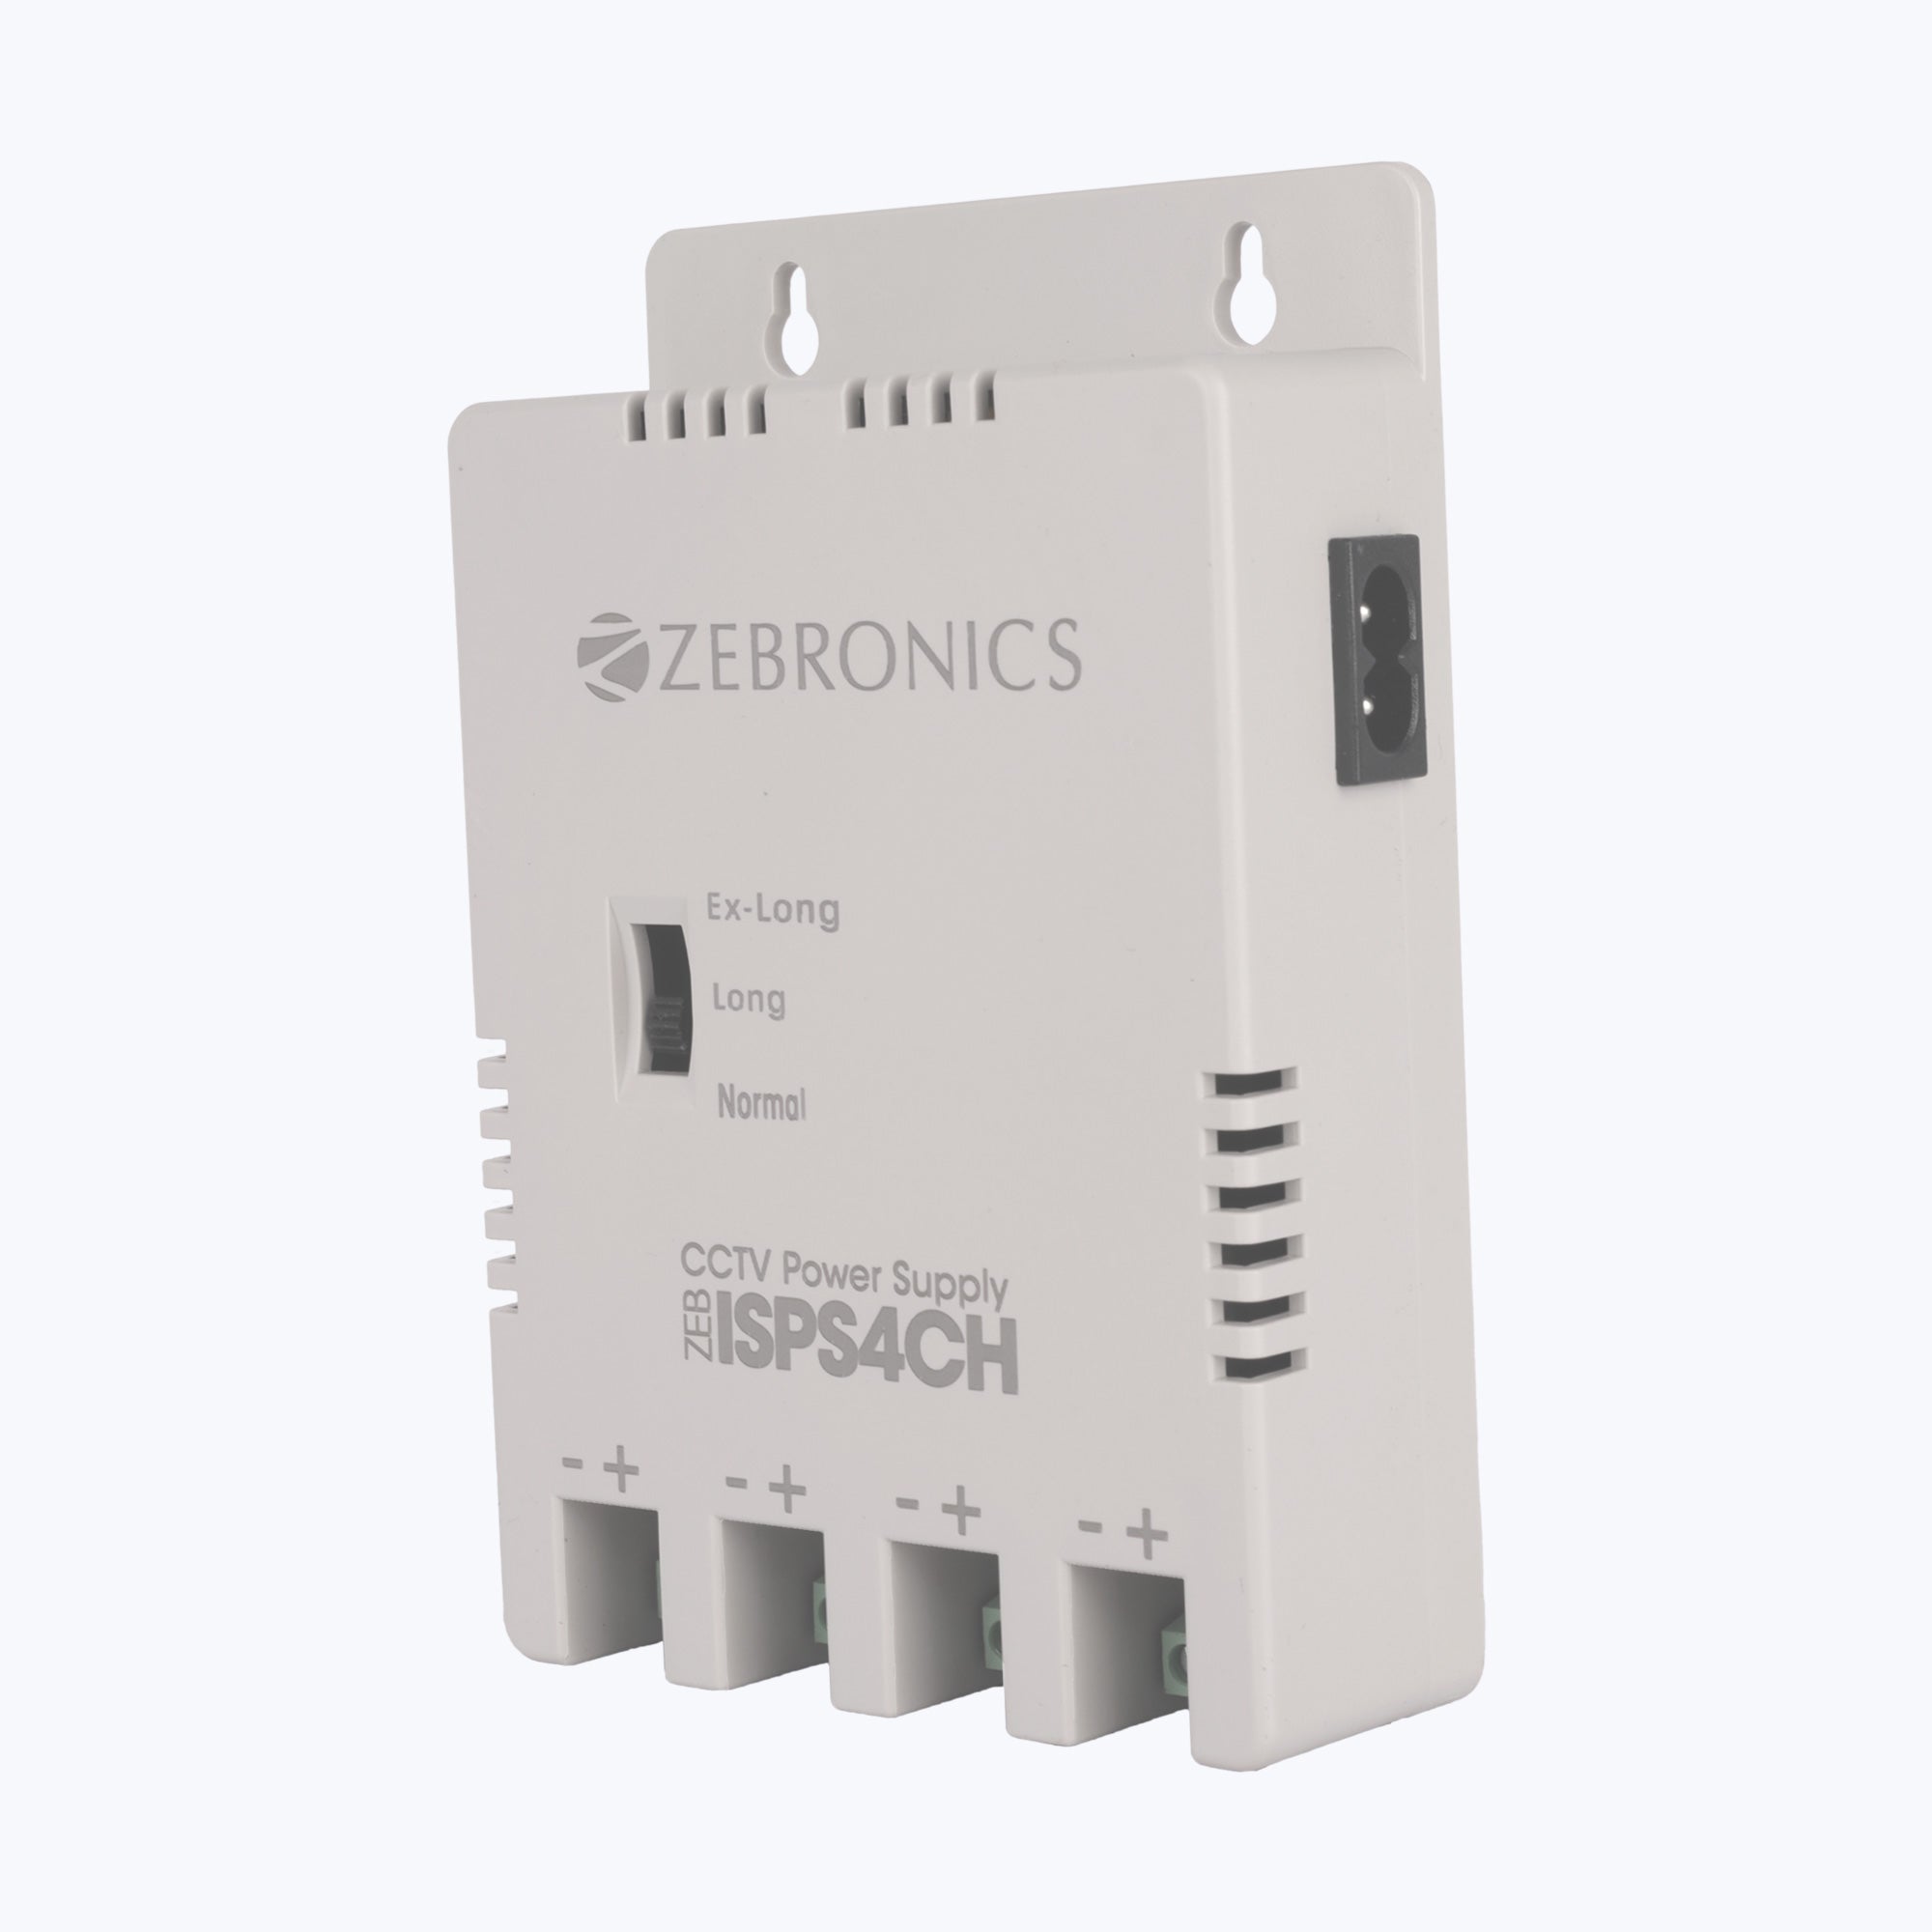 ZEB-ISPS4CH - Indoor power supply - Zebronics